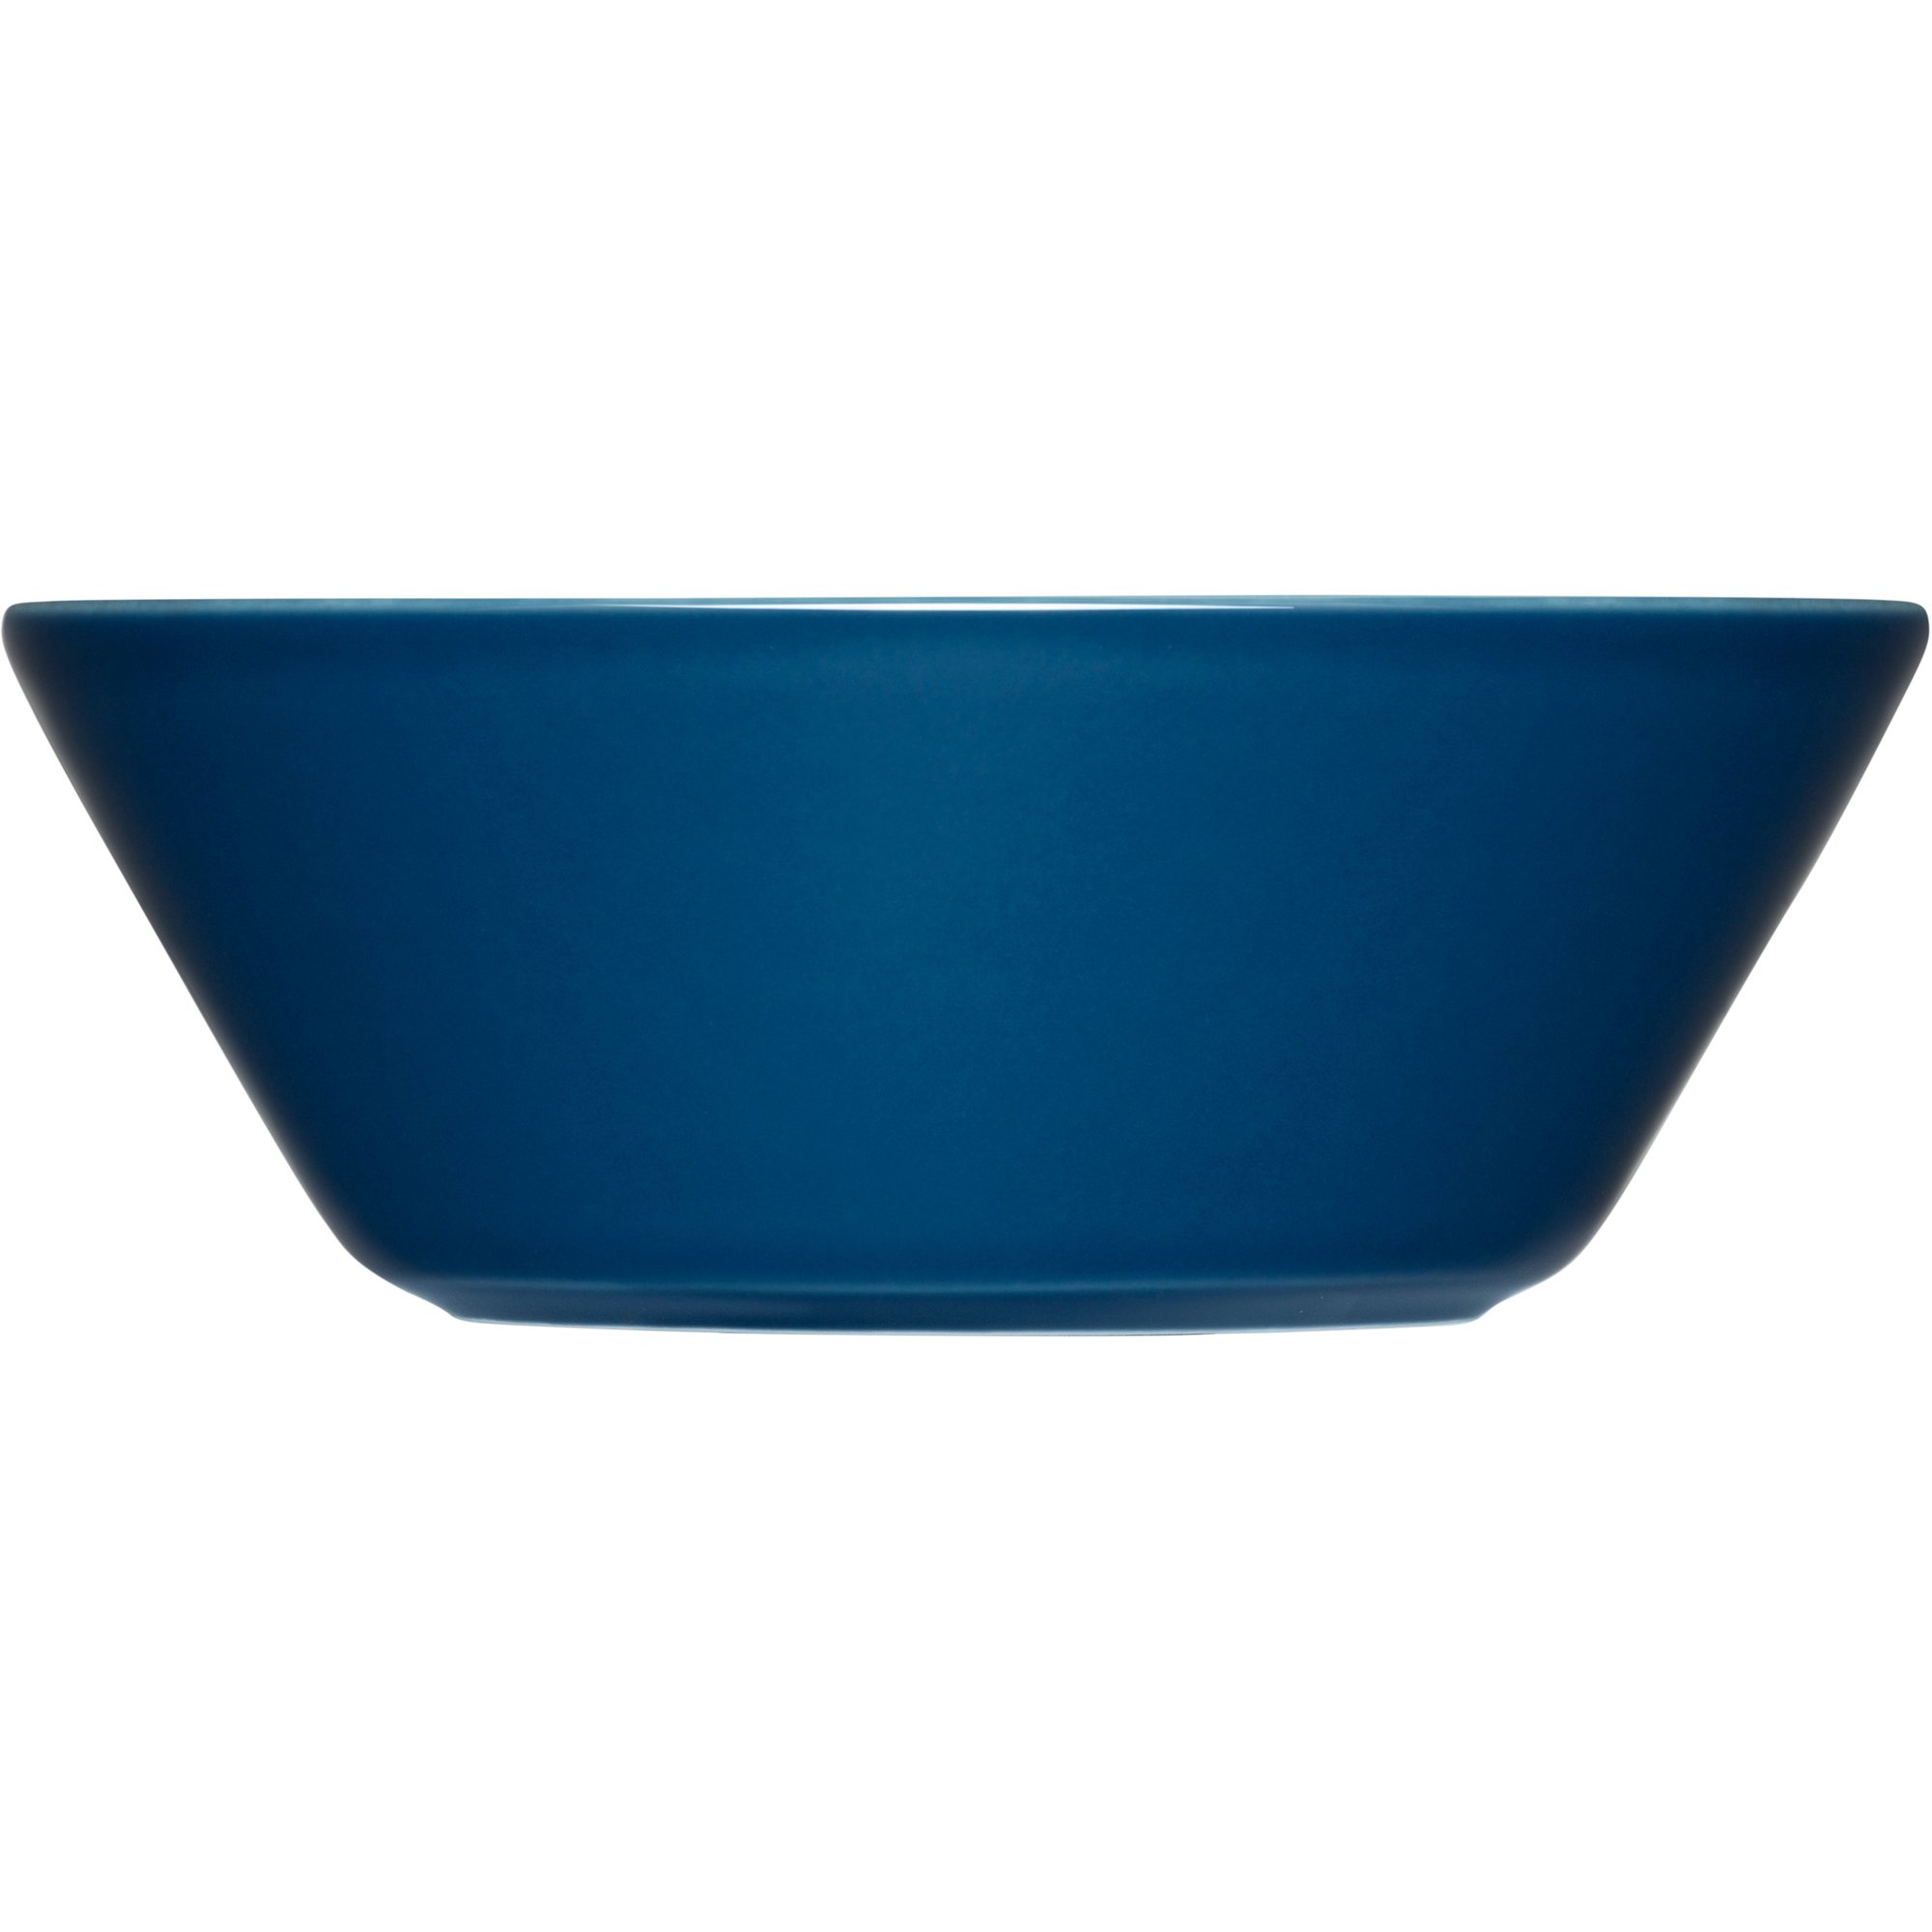 4: Iittala Teema skål, 15 cm, vintage blå